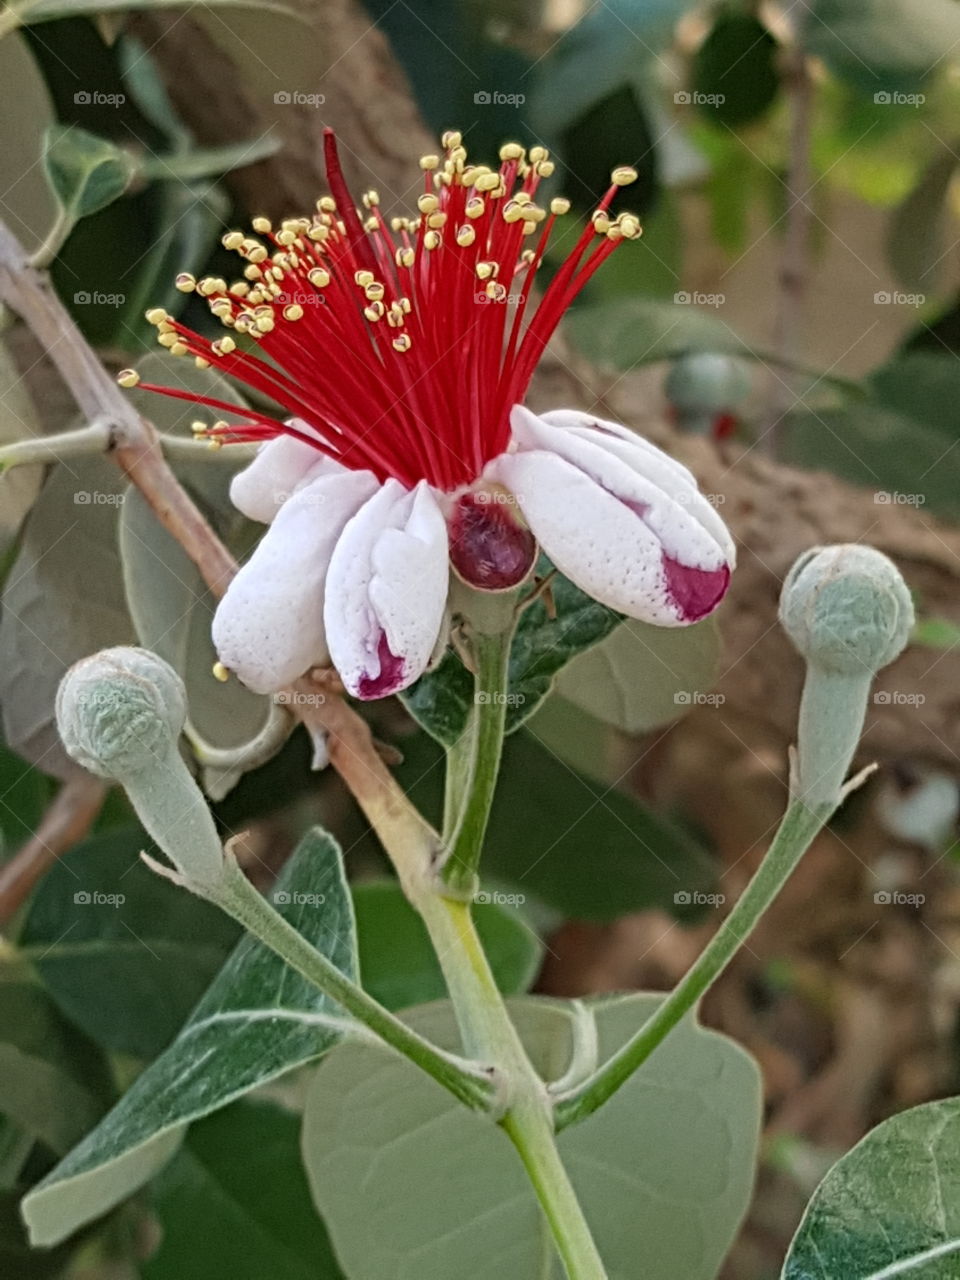 fagioia flower